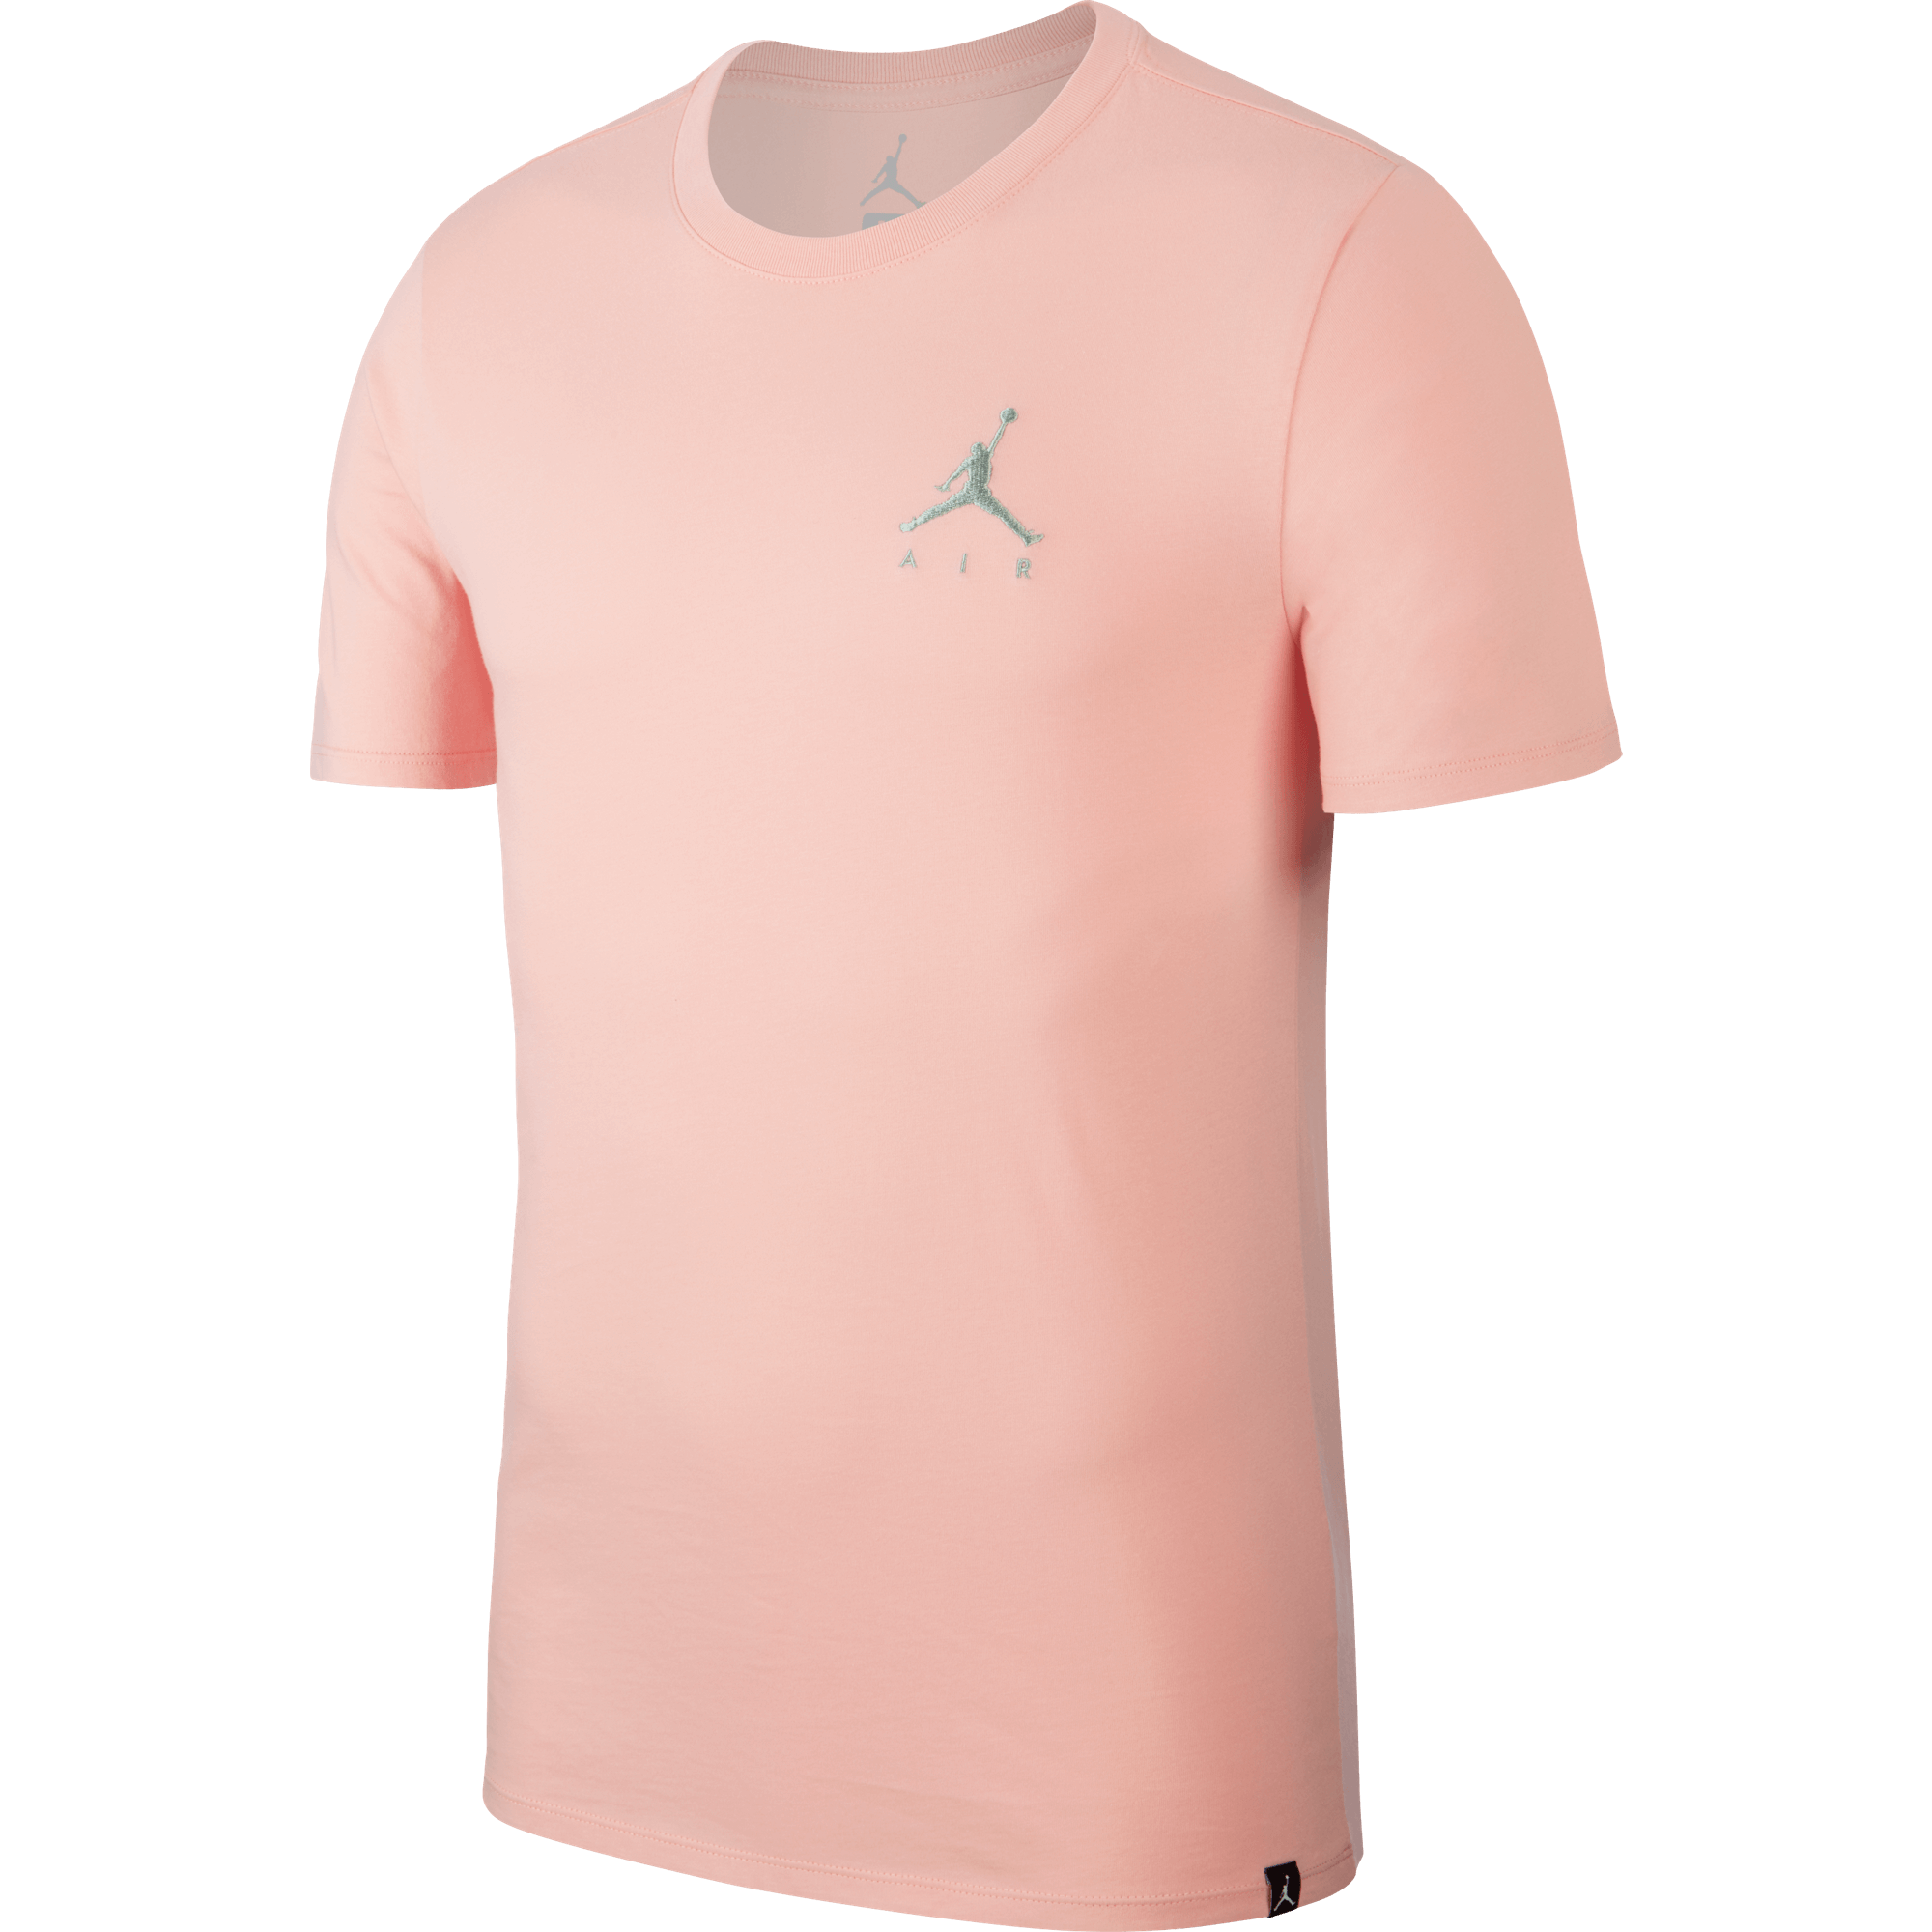 pink air jordan shirt